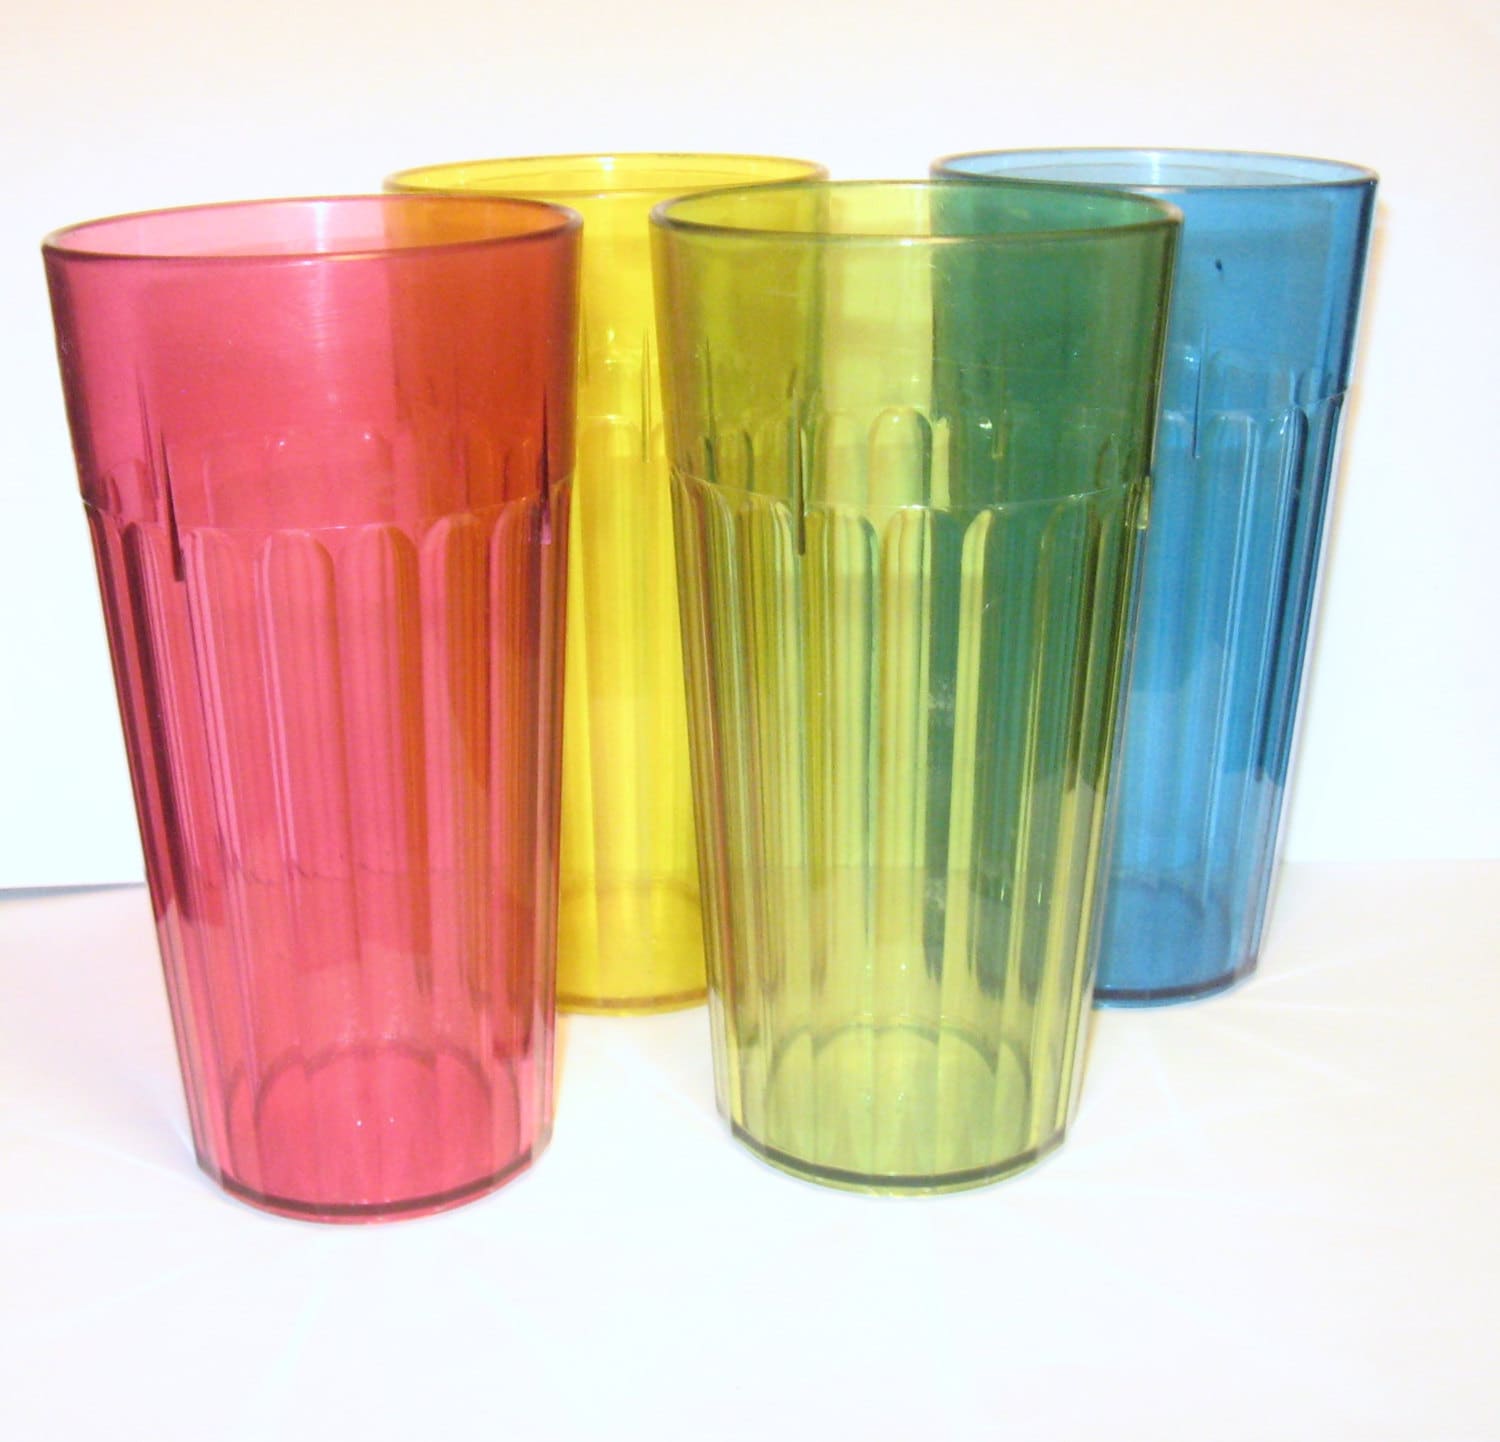 Пластиковые стаканы многоразовые. Стакан пластмассовый многоразовый. Стакан пластиковый высокий. Цветные пластиковые стаканчики. Купить стаканы 0.5